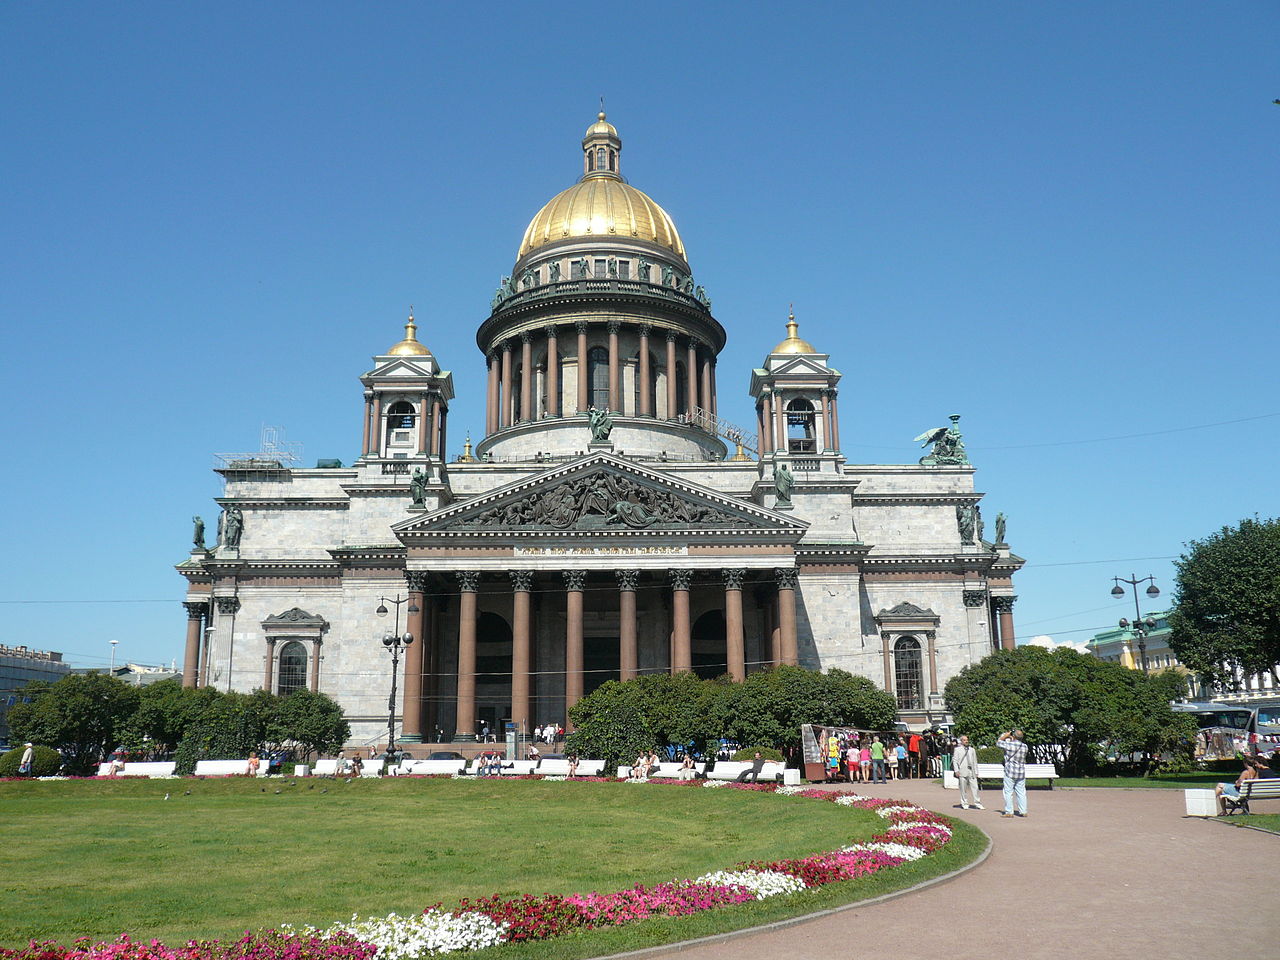 Почему в Санкт-Петербурге так красиво: 8 особенностей архитектуры